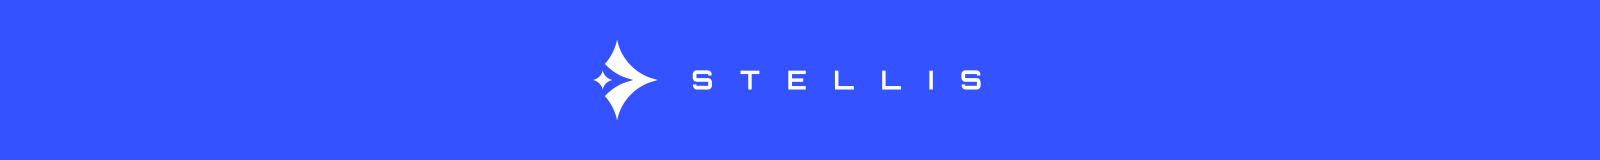 Stellis logo